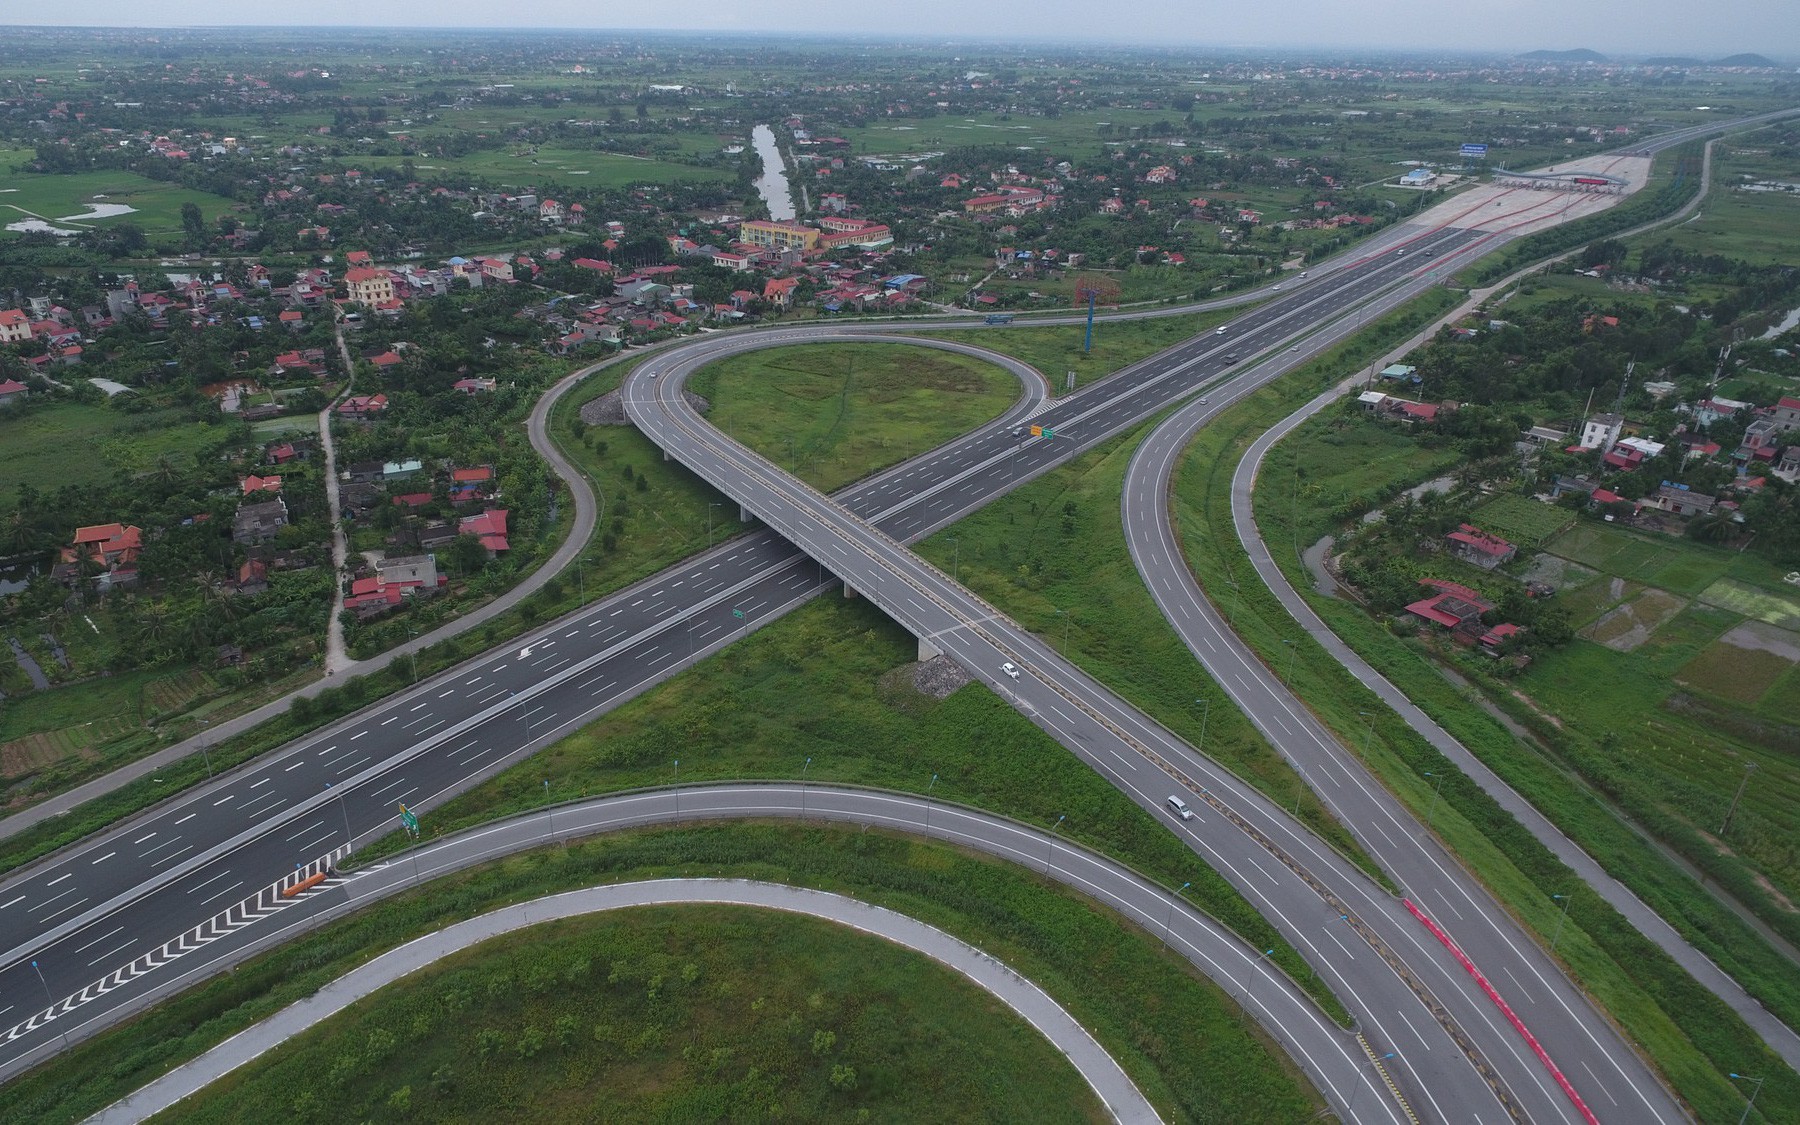 Quốc hội sẽ lấy ý kiến các đại biểu việc trích 4.069 tỷ đồng để trả nợ tiền GPMB dự án đường cao tốc Hà Nội-Hải Phòng - Ảnh 1.